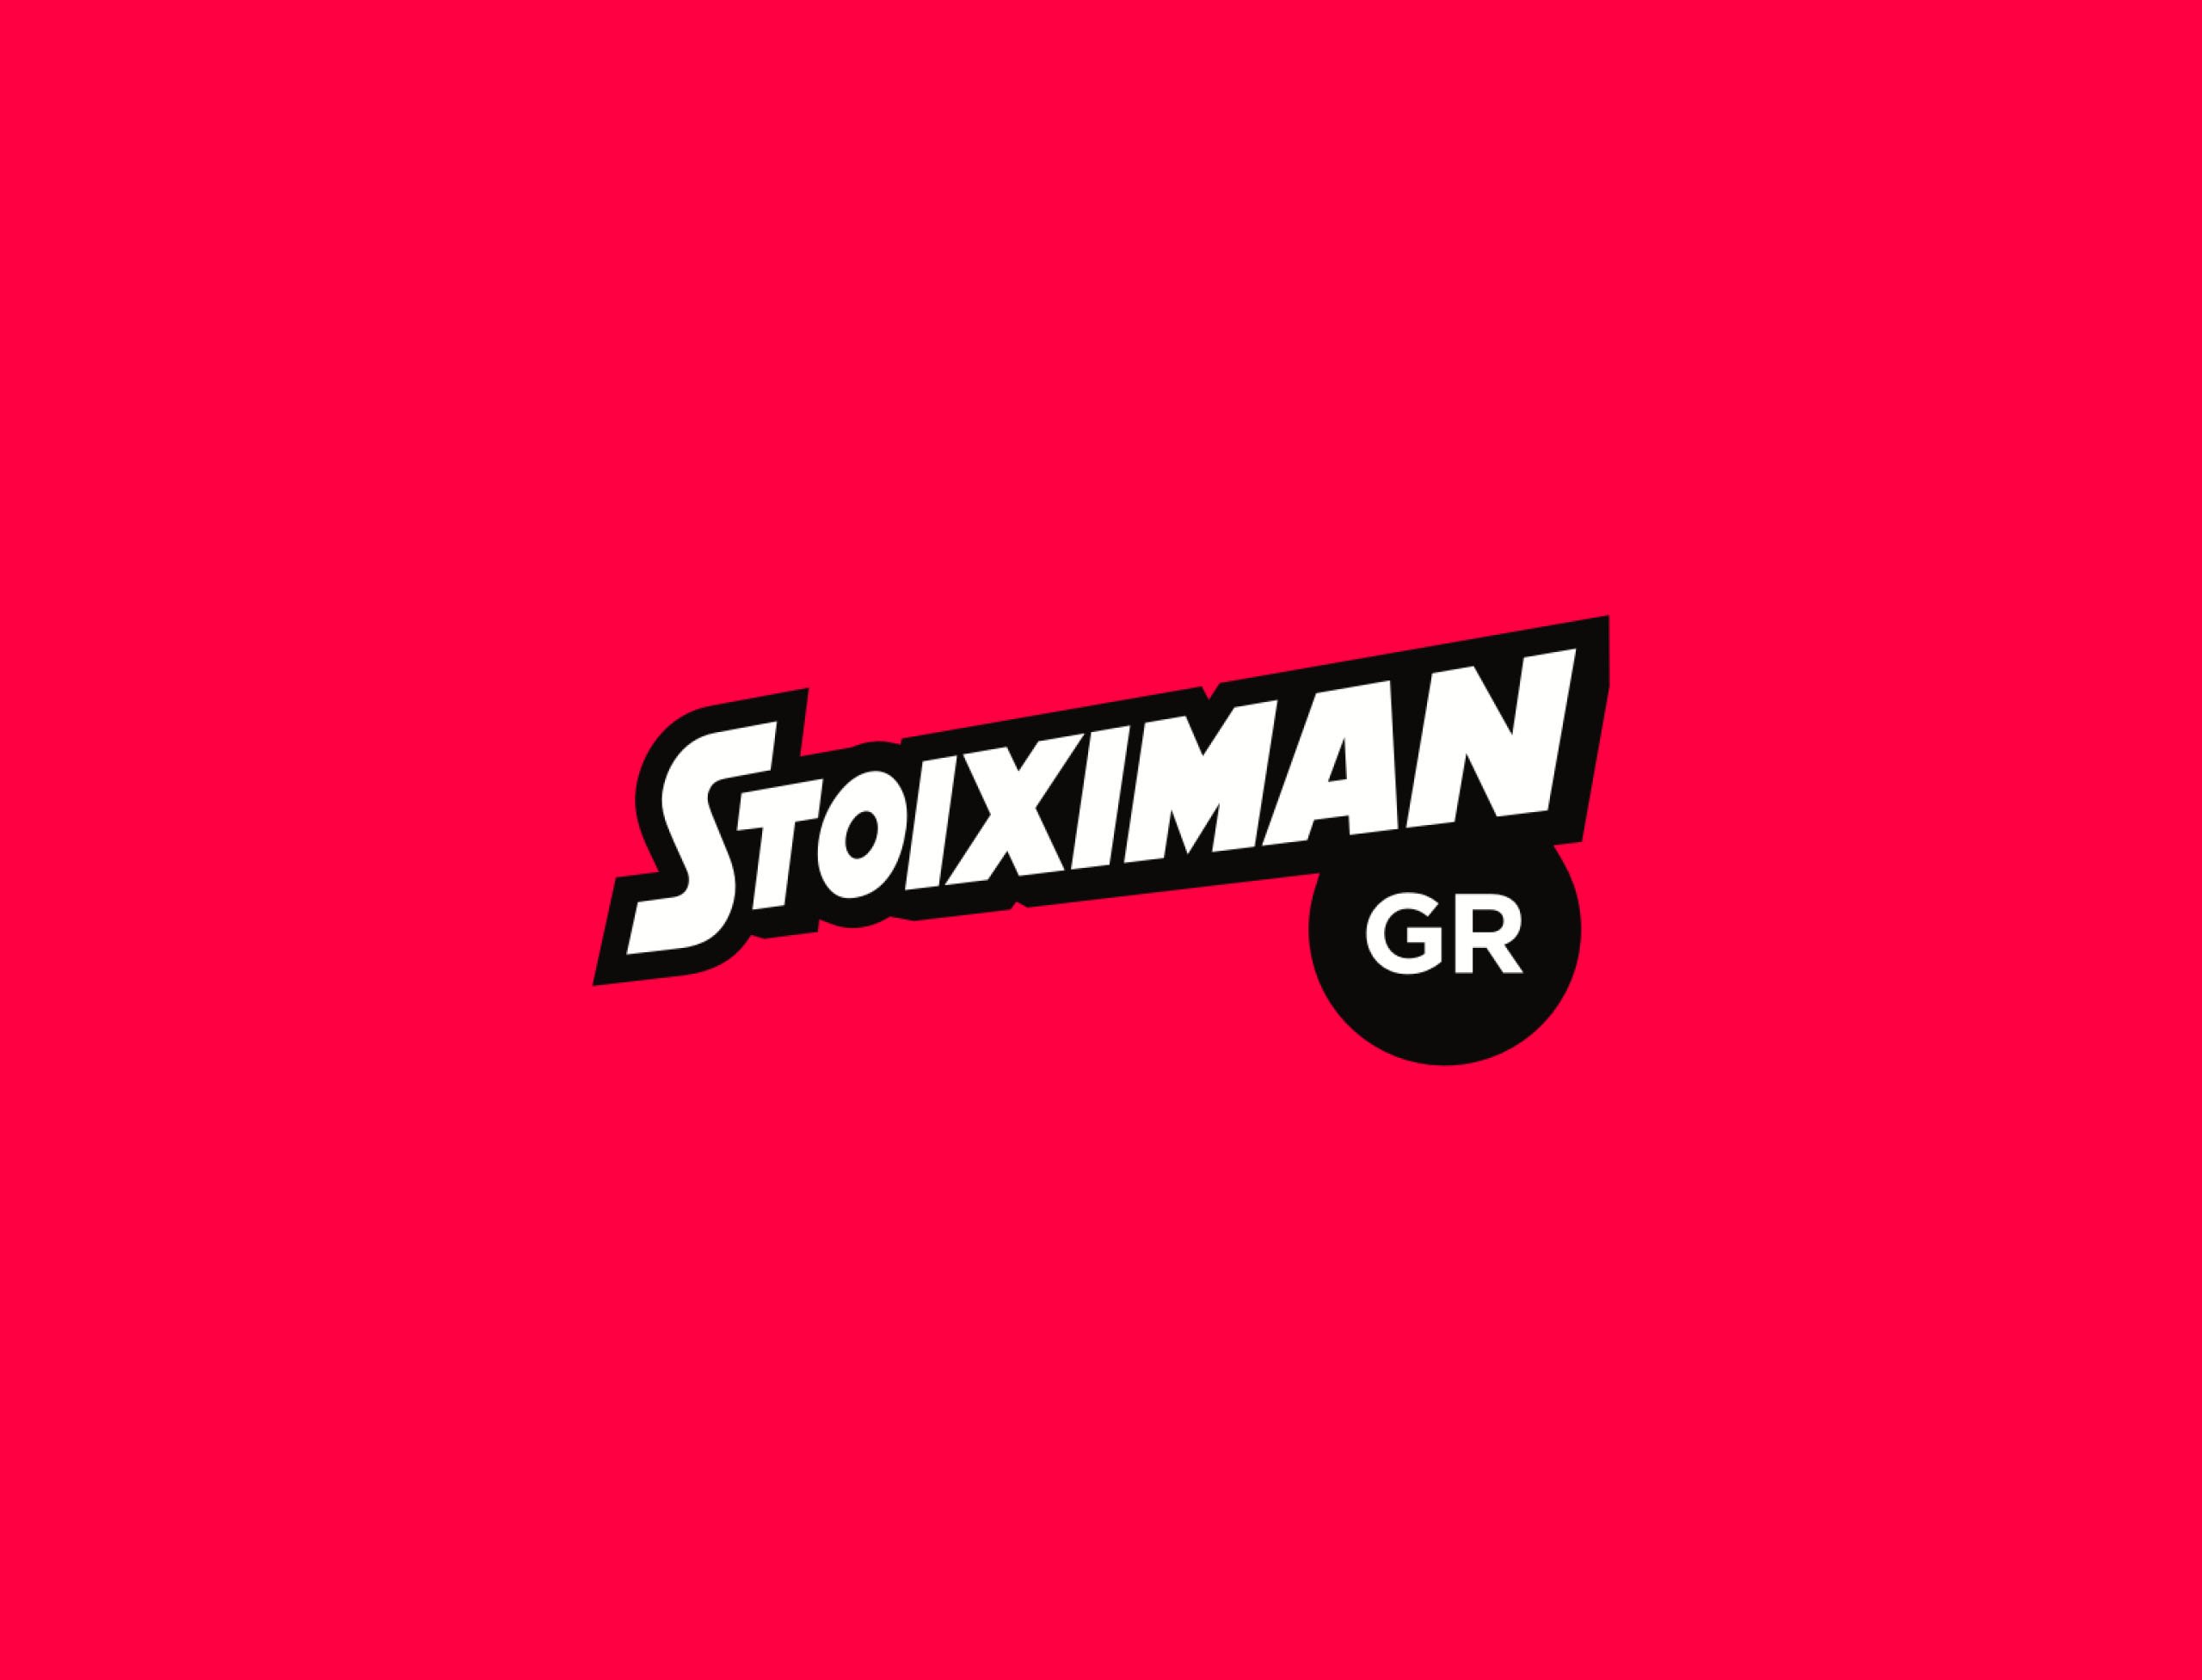 Stoiximan search optimisation